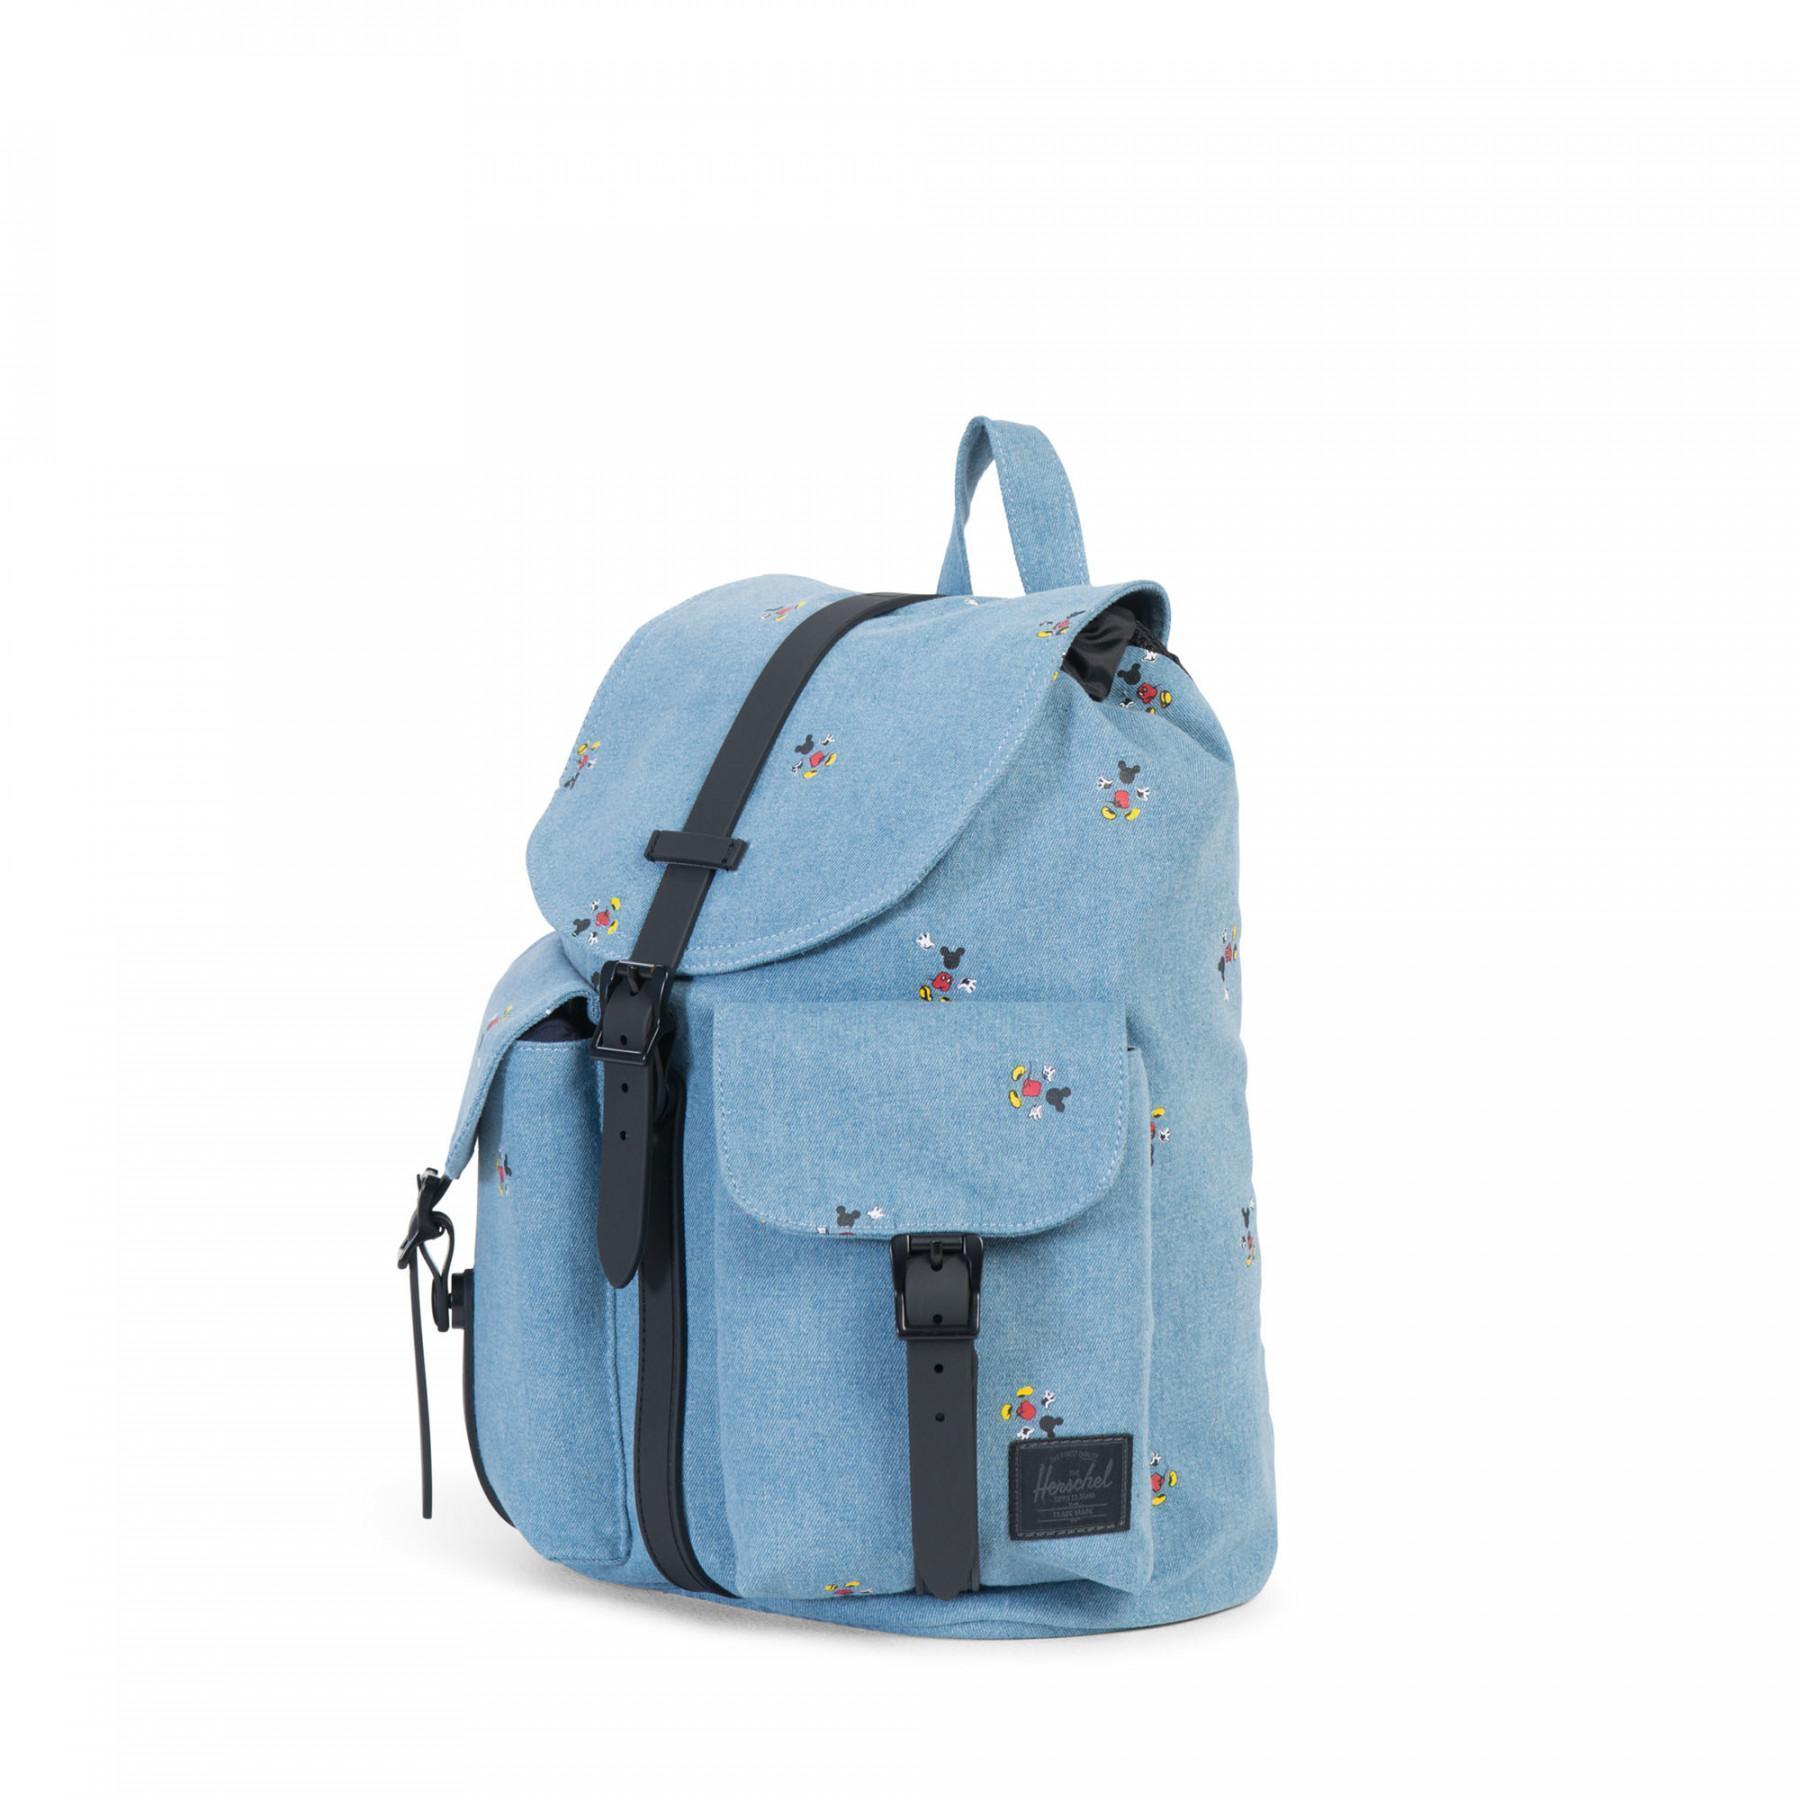 Women's backpack Herschel dawson